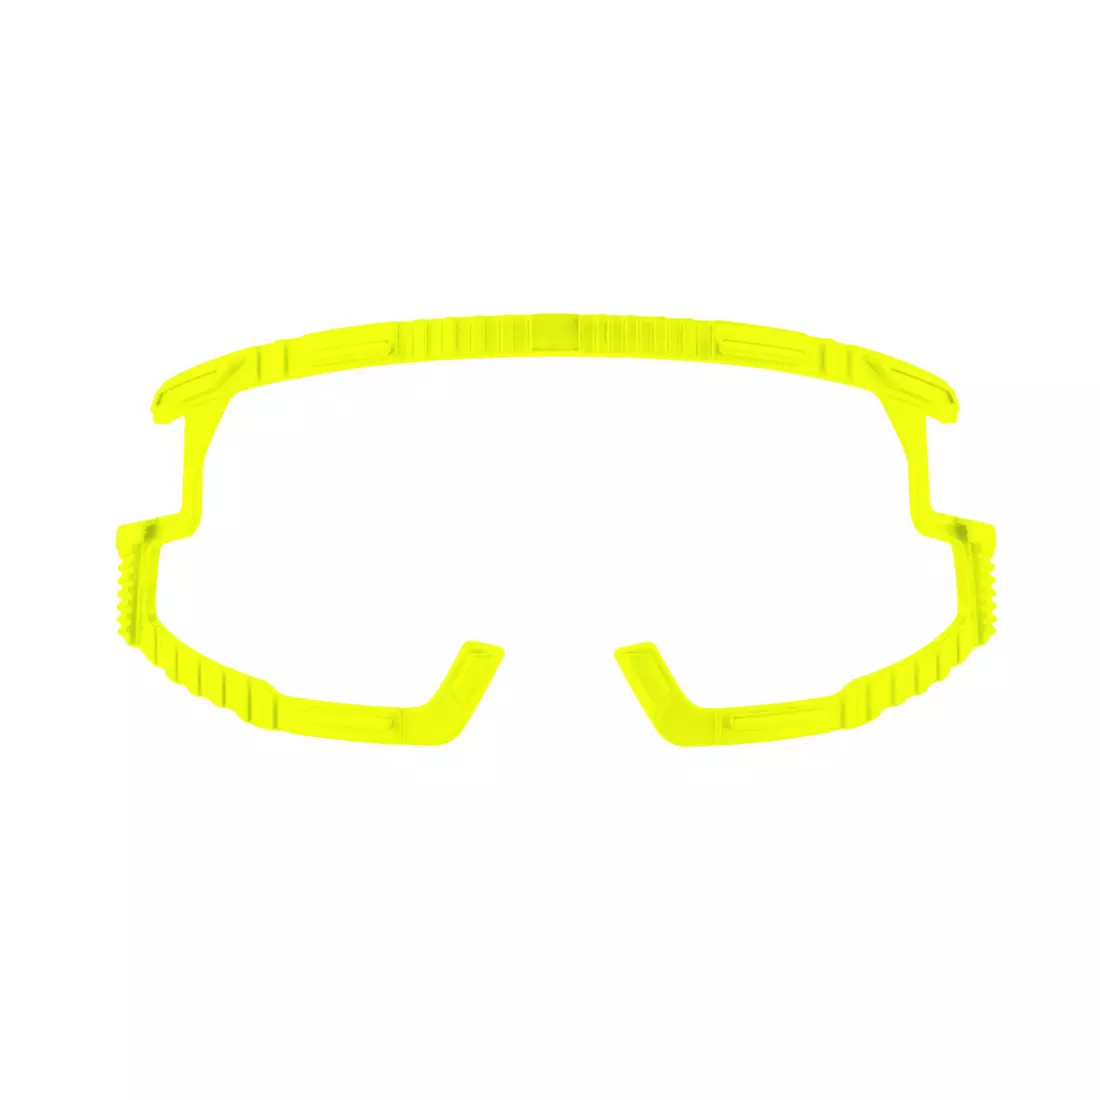 FORCE GRIP Sport szemüveg, olíva-arany